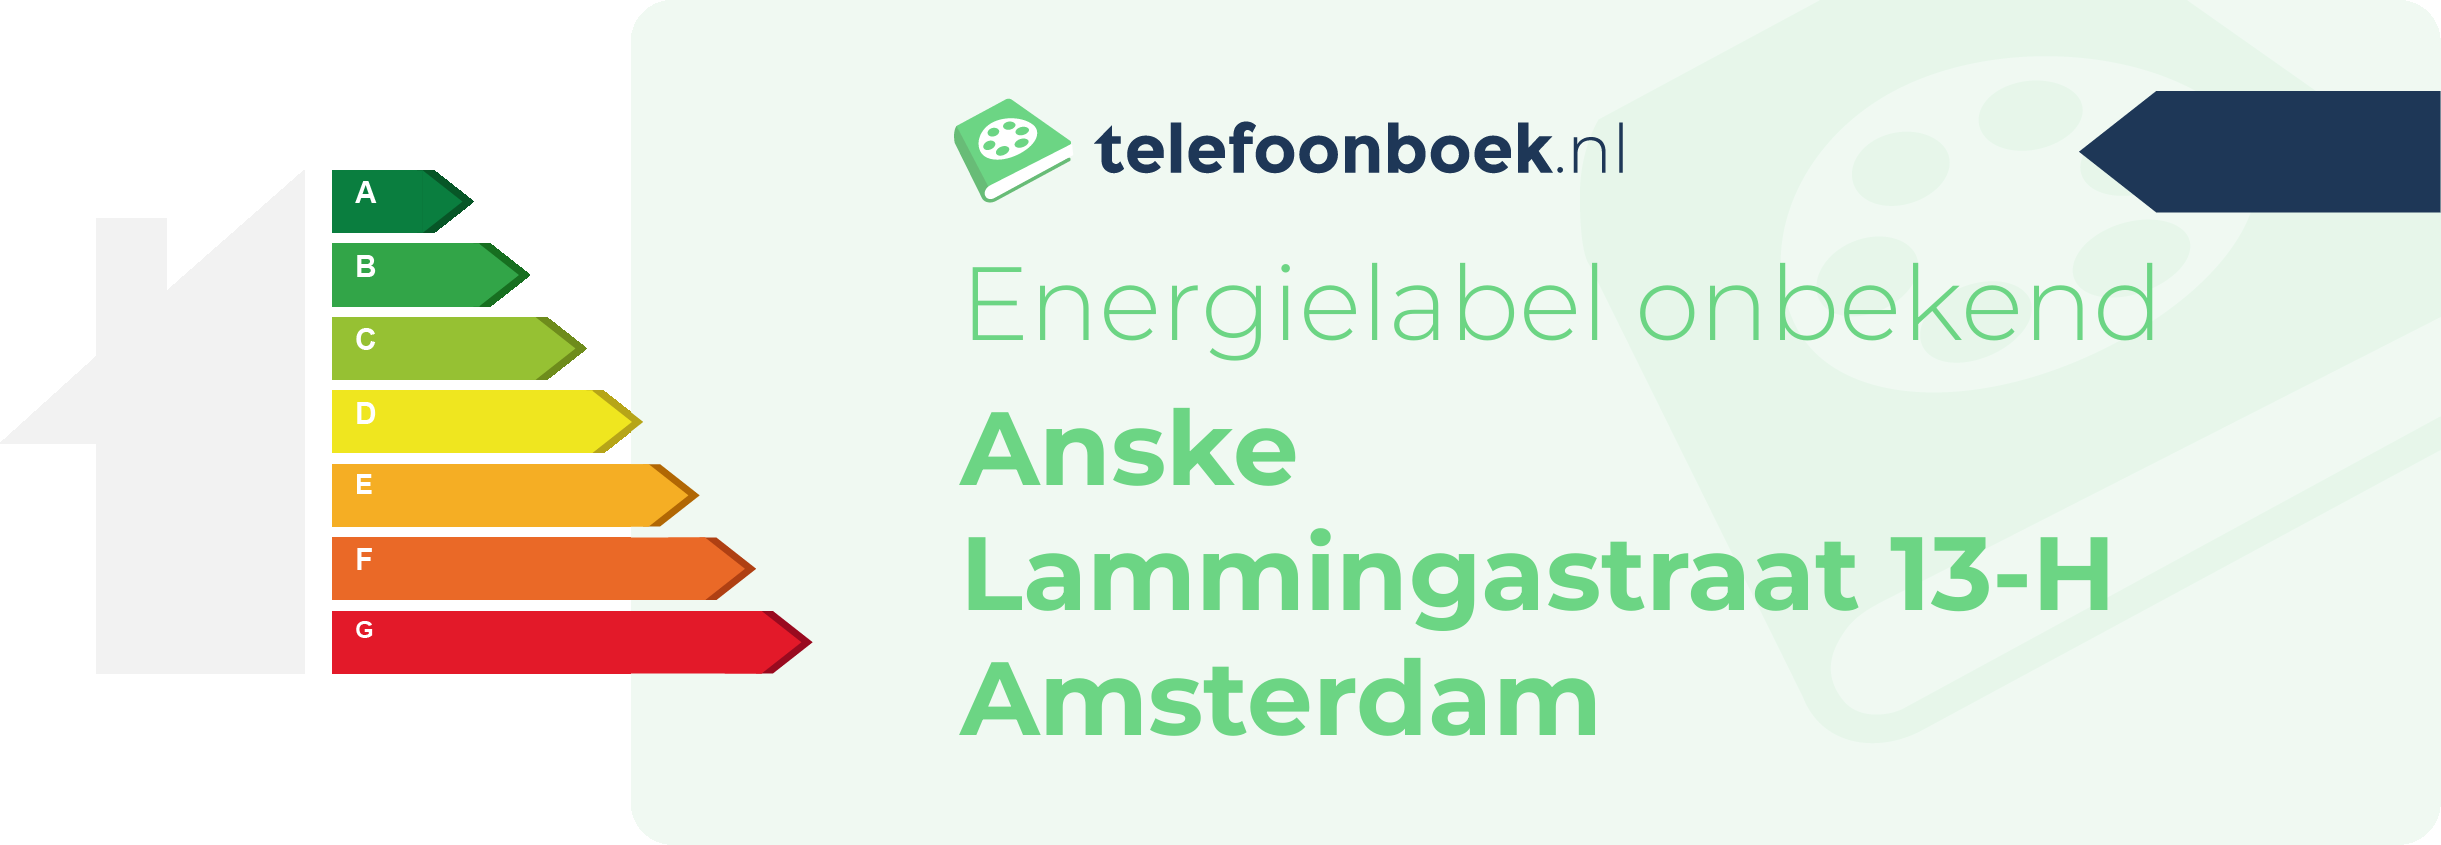 Energielabel Anske Lammingastraat 13-H Amsterdam